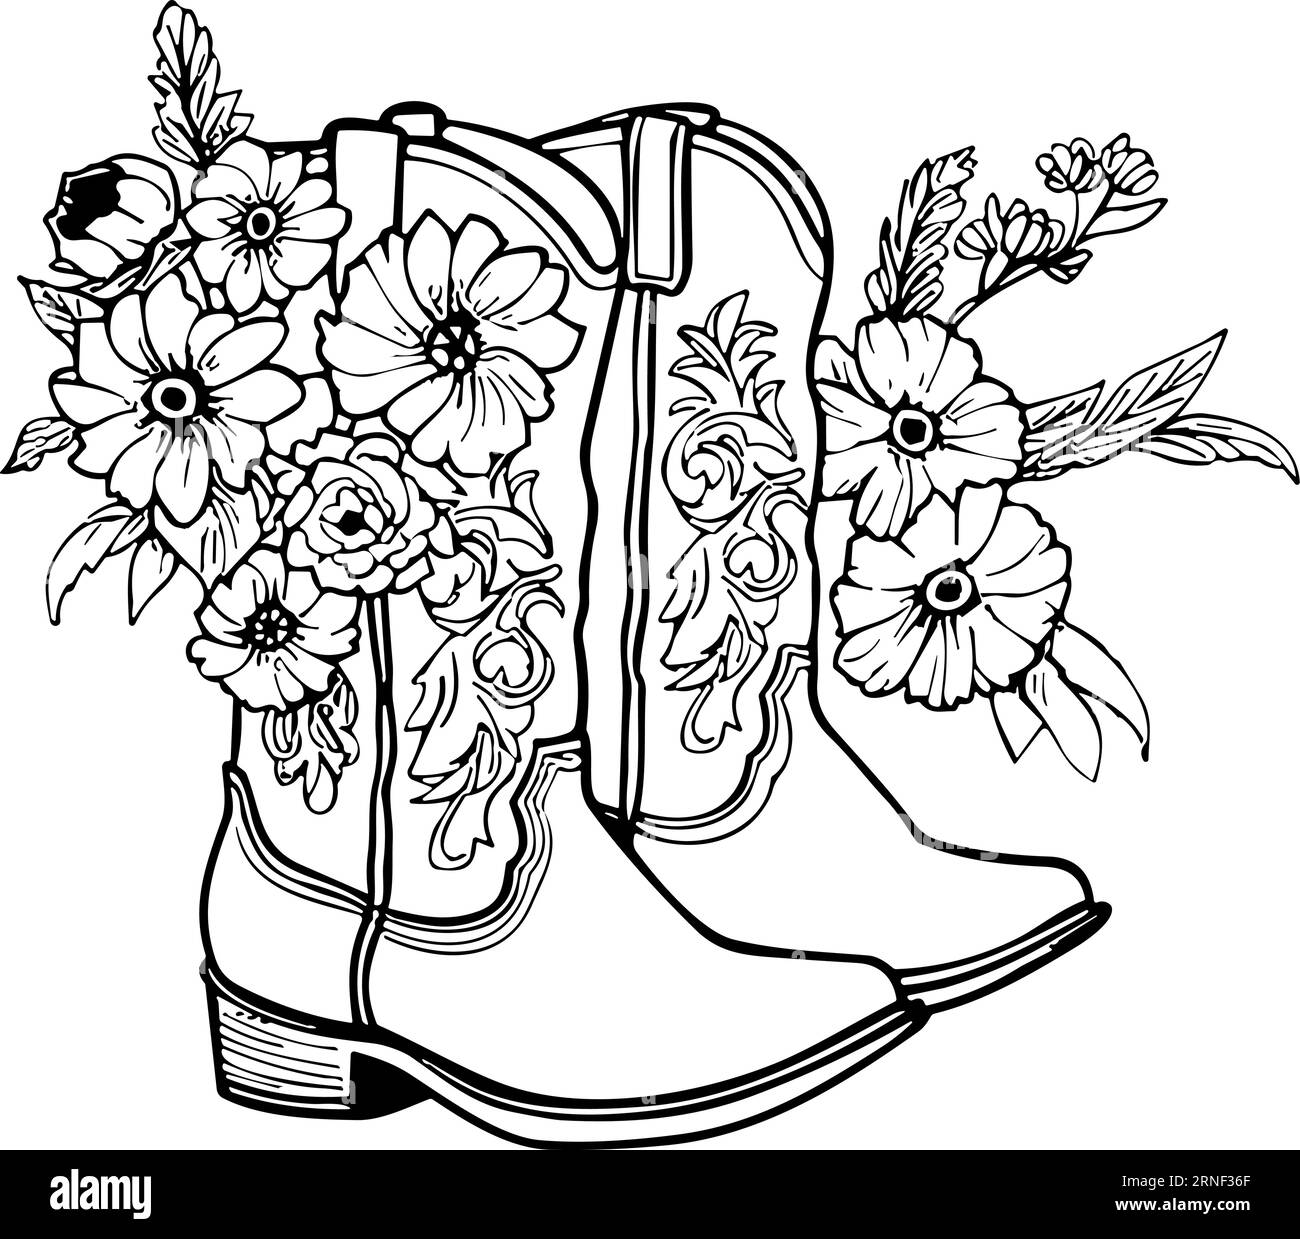 Cowboystiefel mit Blumen und Blättern. Blumendekoration. Konturvektorillustration isoliert auf weiß für Design, Grußkarten, Drucken Stock Vektor